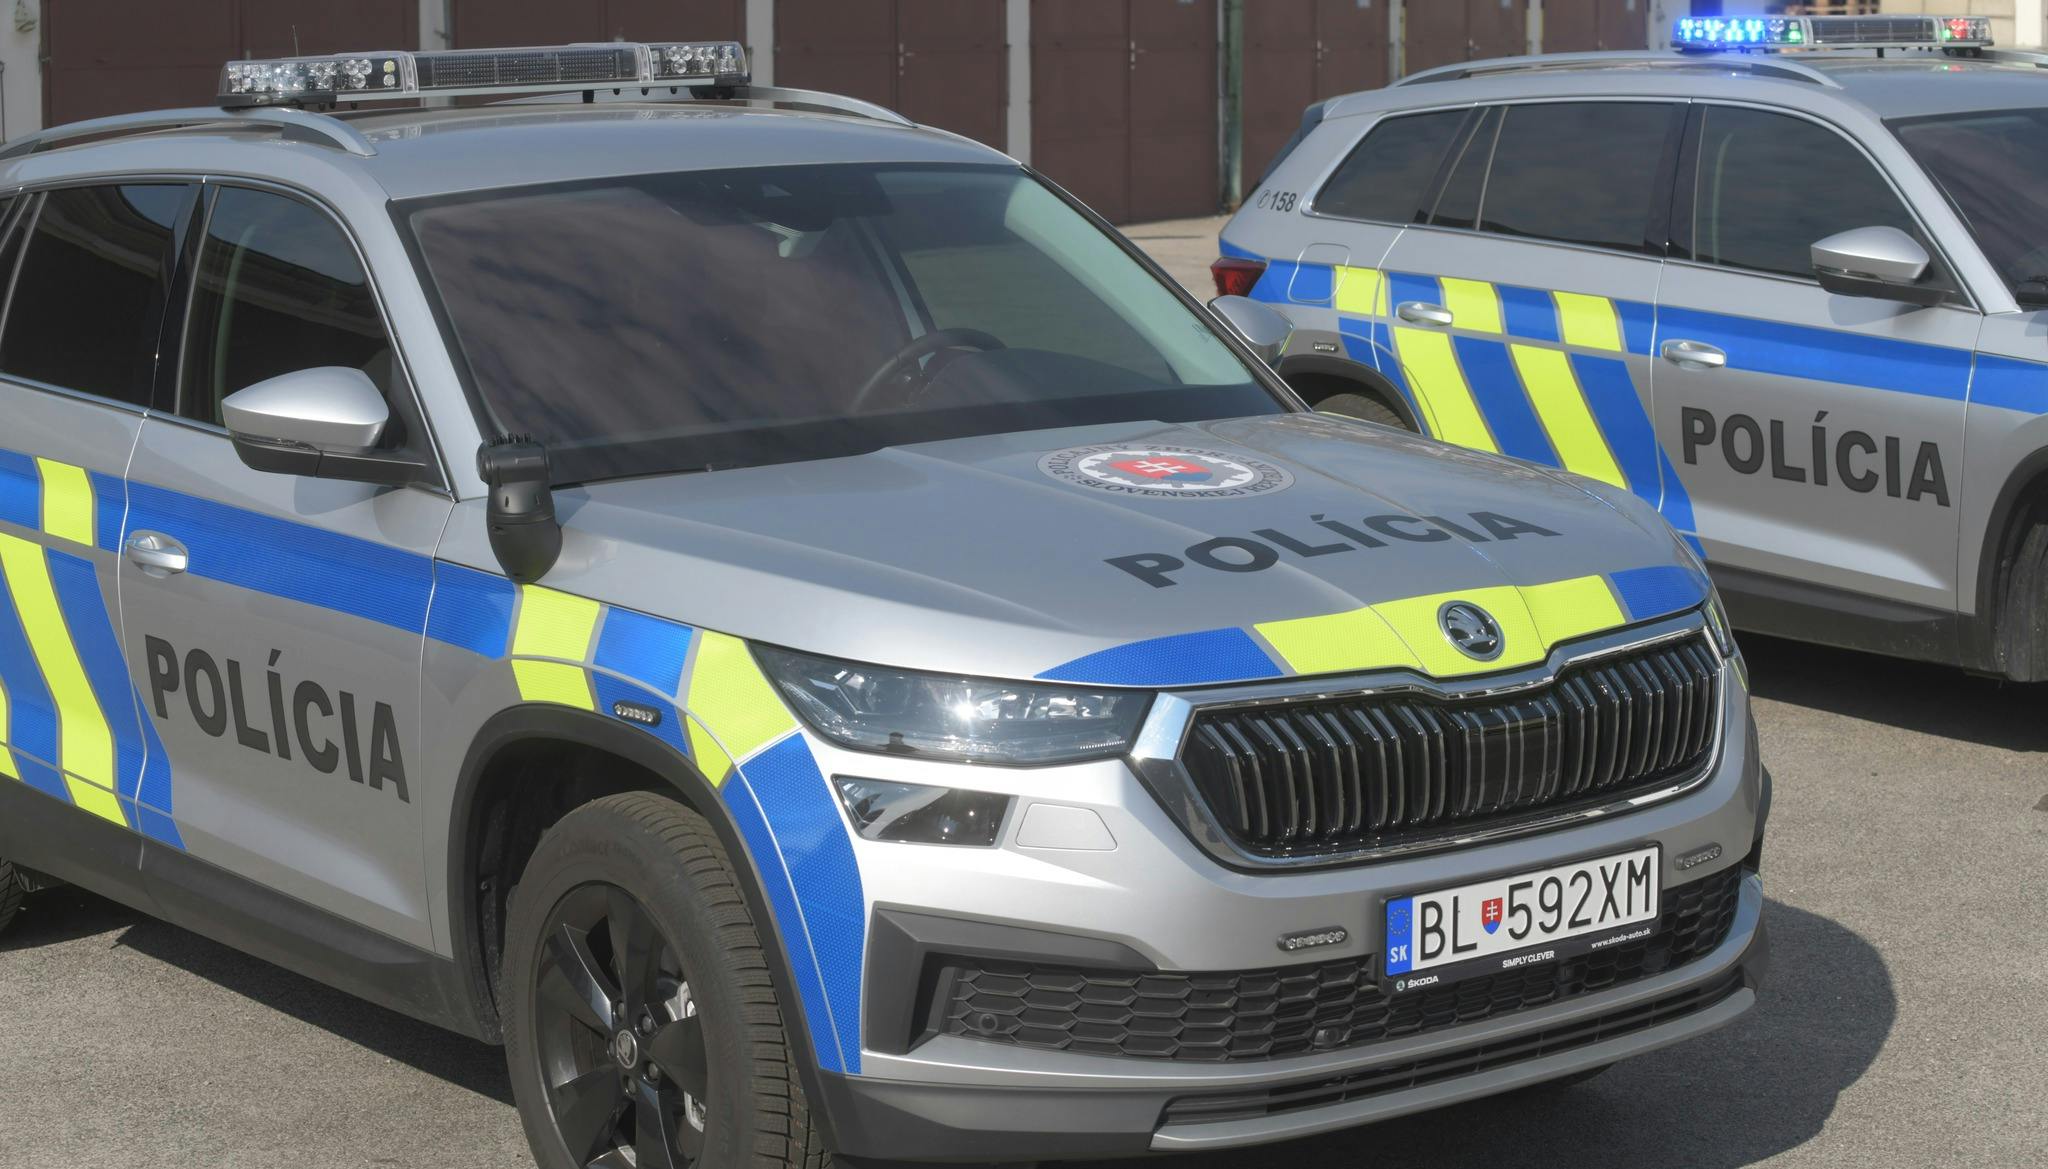 Polícia zatiaľ disponuje dvojicou takýchto                   vozidiel, ktoré budú slúžiť v bratislavskom a nitrianskom kraji, pričom v budúcnosti by mohli takto upravené vozidlá slúžiť v každom regióne